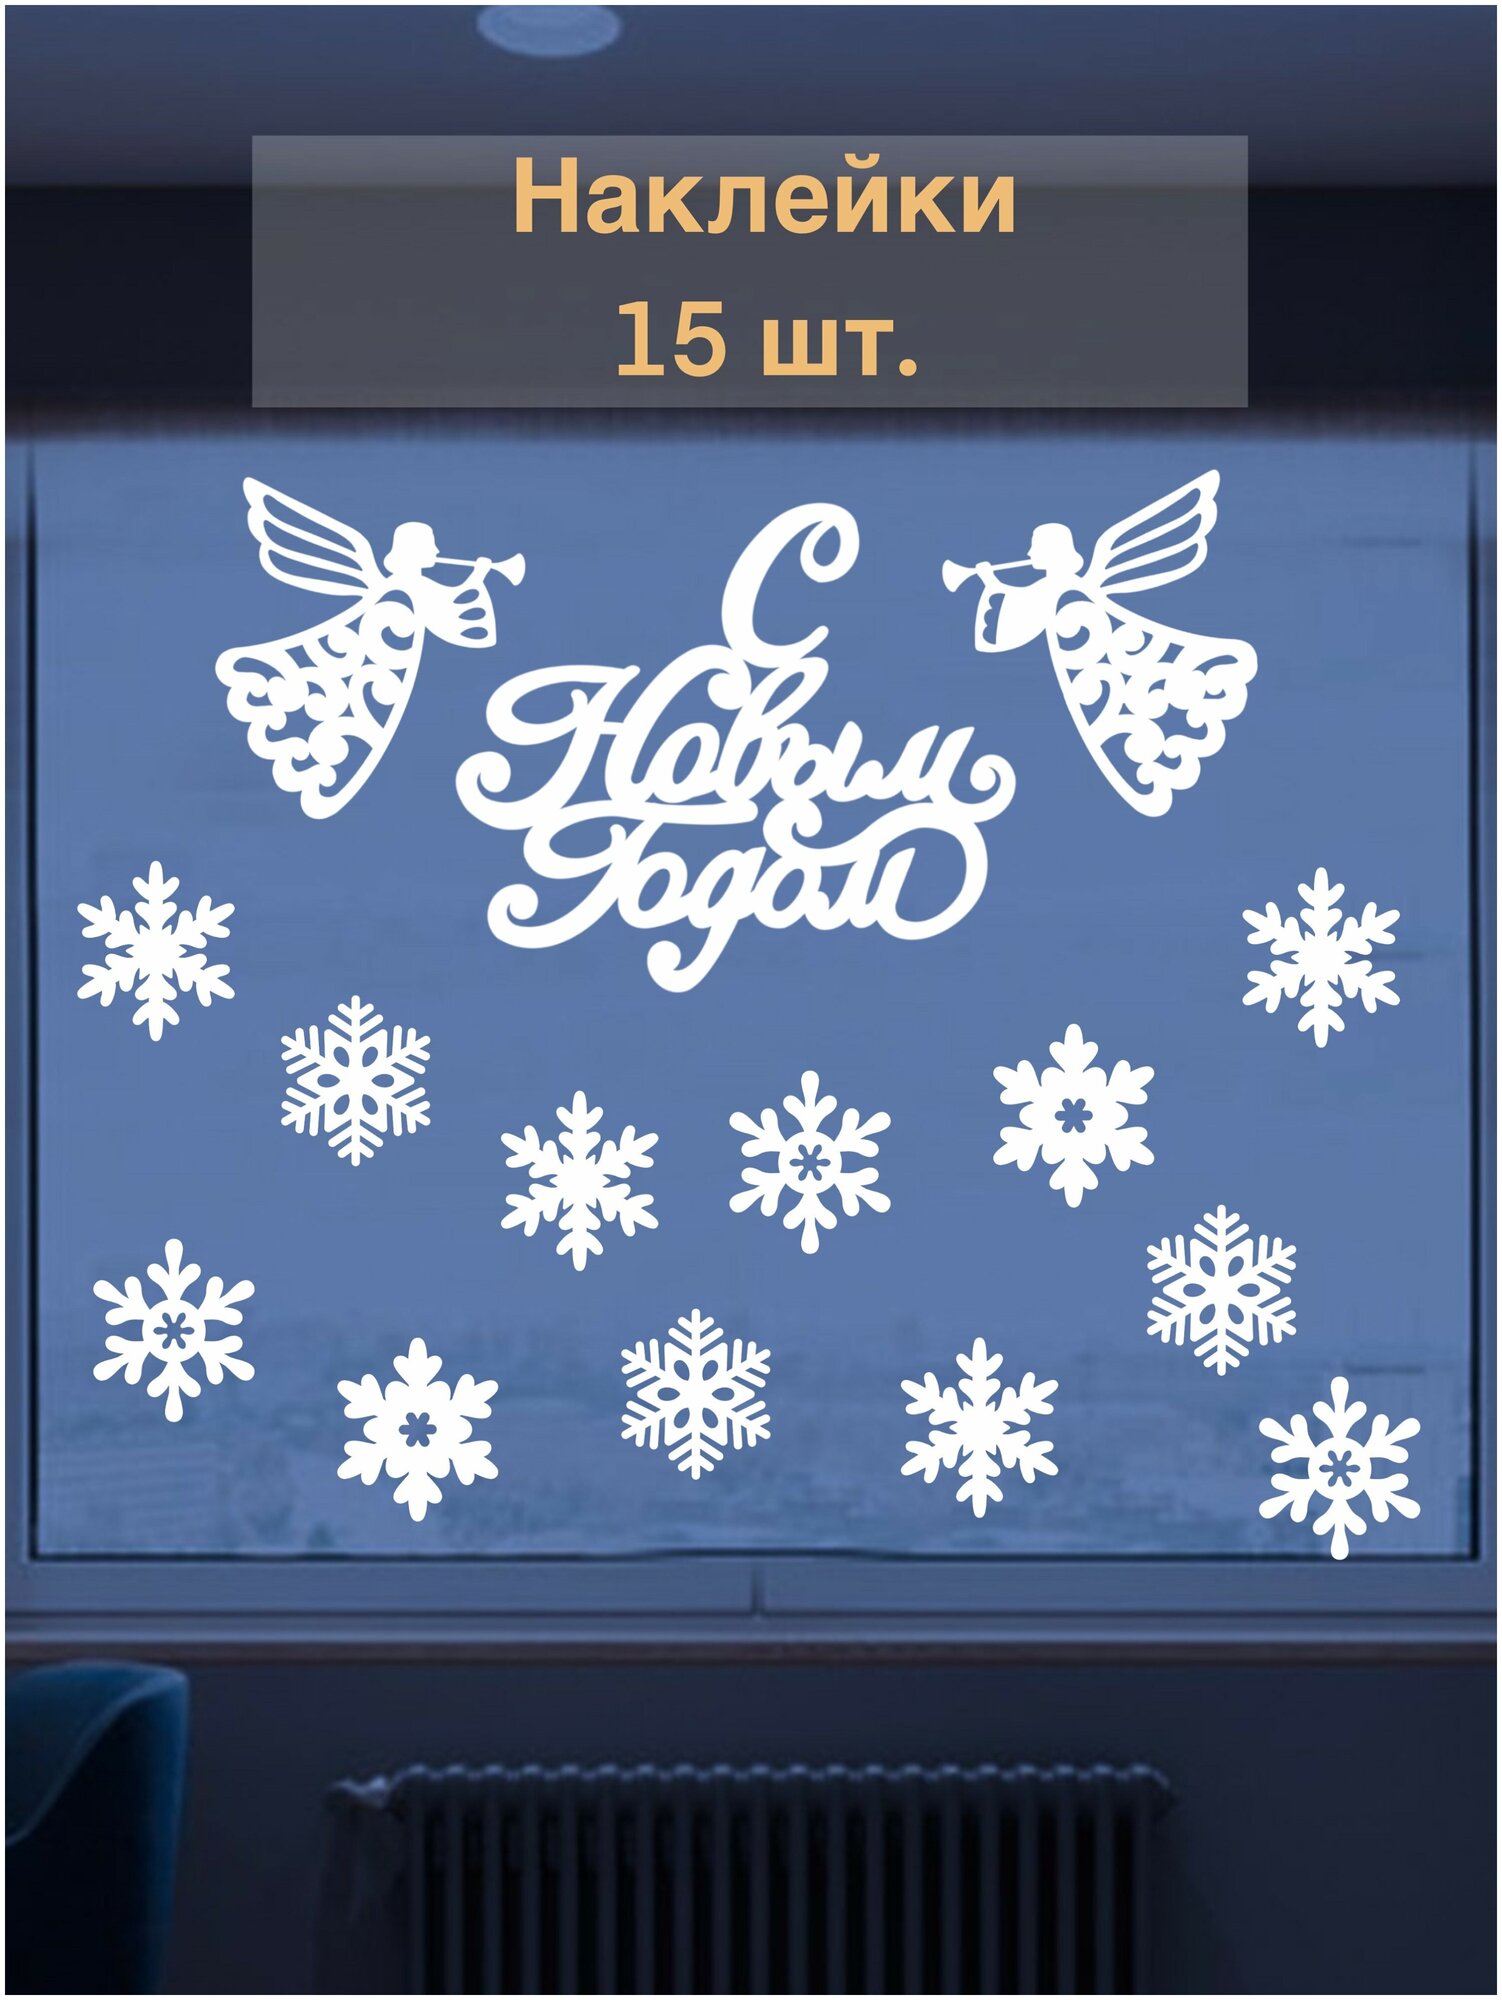 Набор новогодних виниловых наклеек на окно (стену или дверь) "Новогодние Ангелы", 15 шт. (сказка, снежинки, С Новым Годом!)